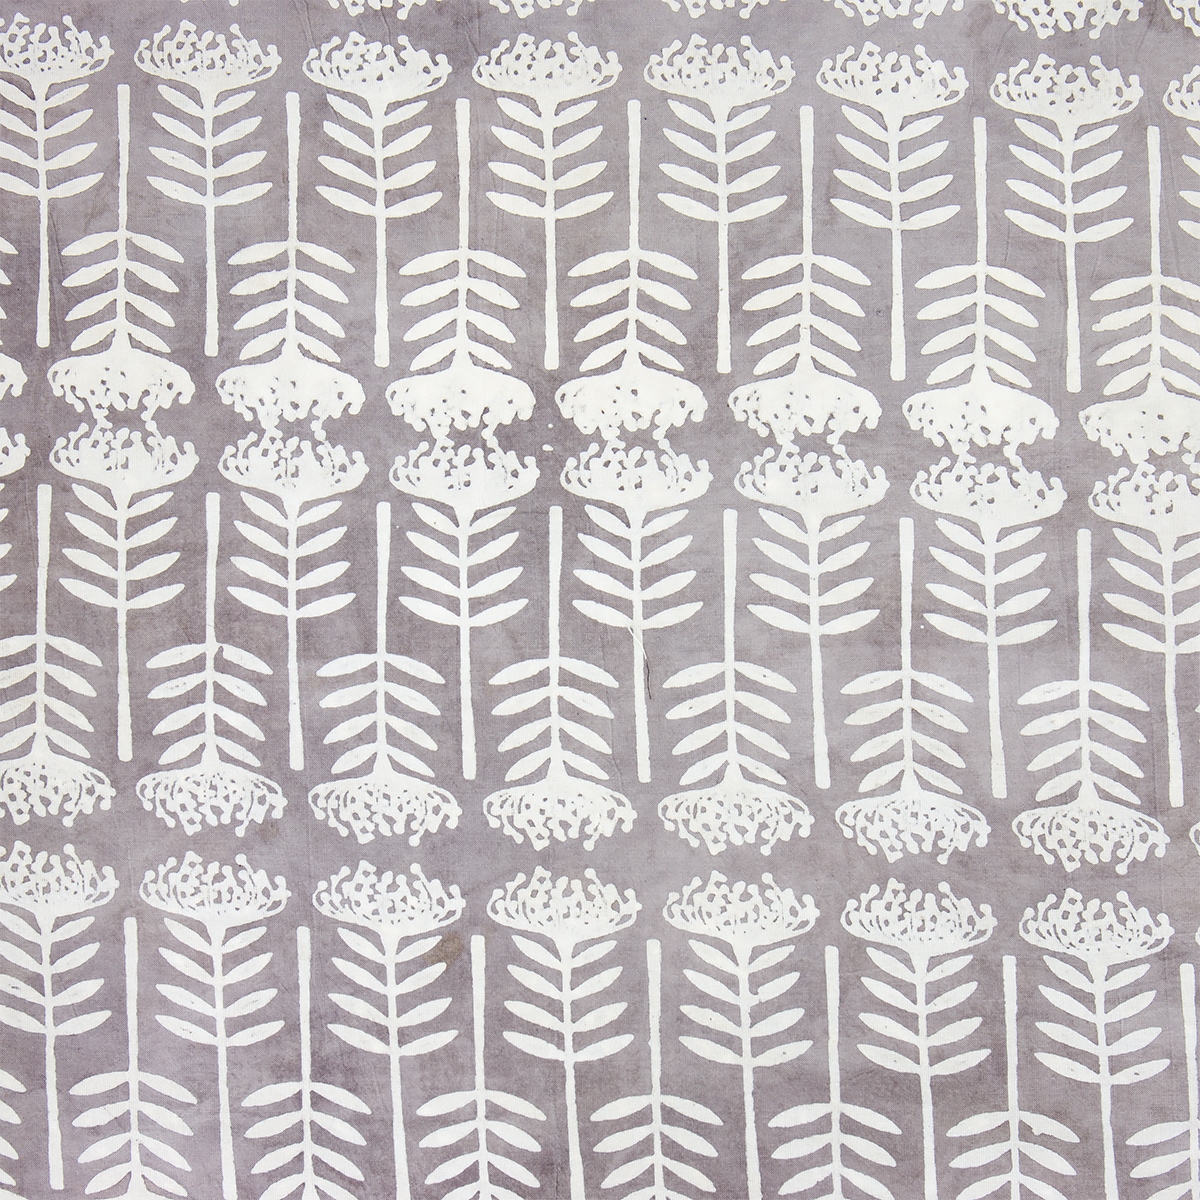 NATURAL Flora Fabric, grey